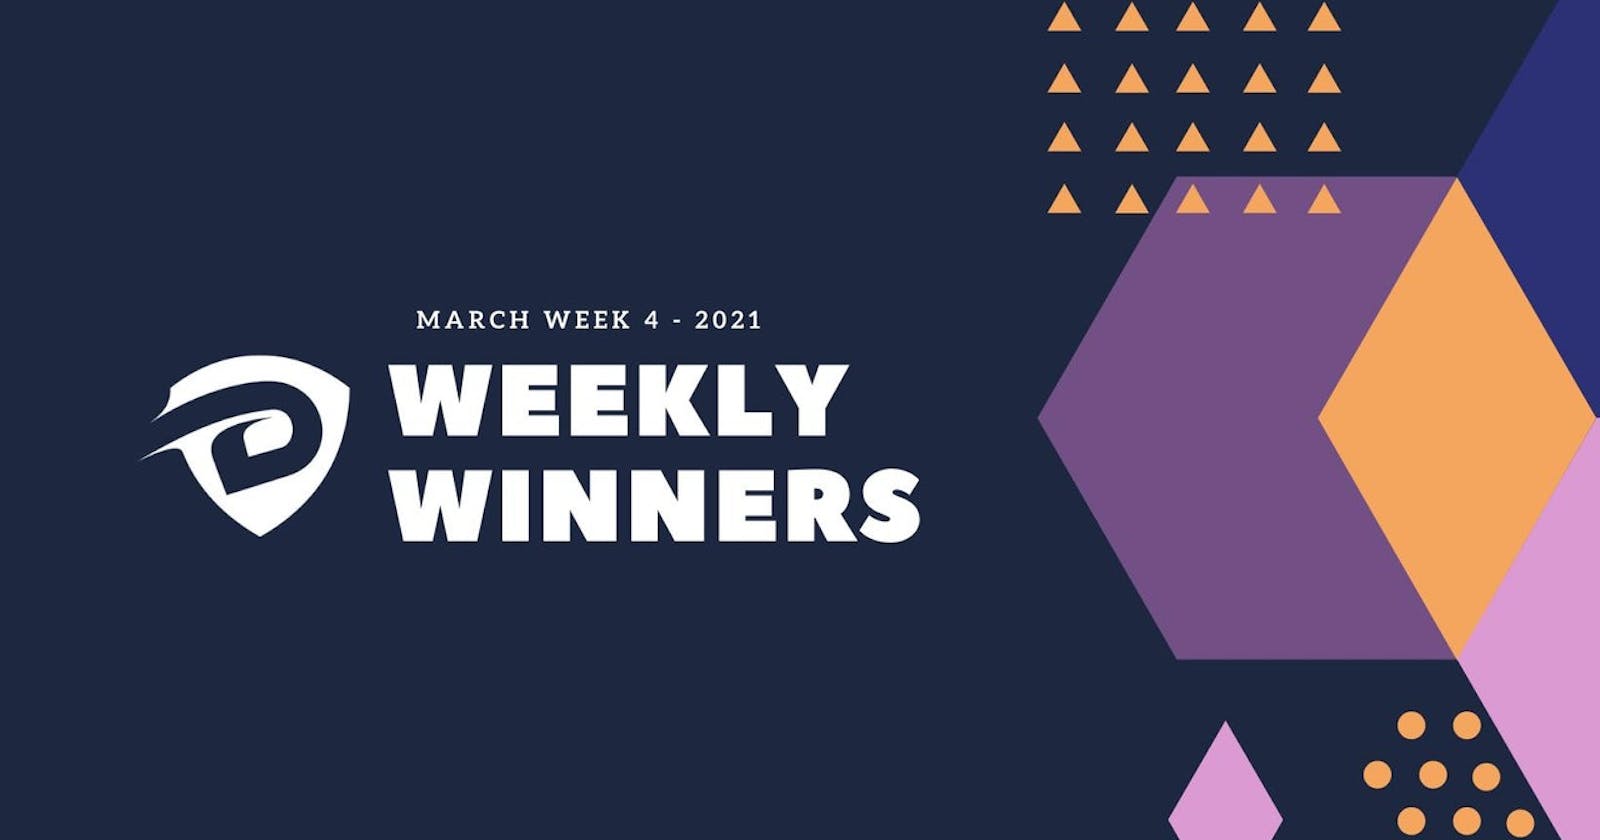 DevDojo Weekly Winners Week 4 March 2021